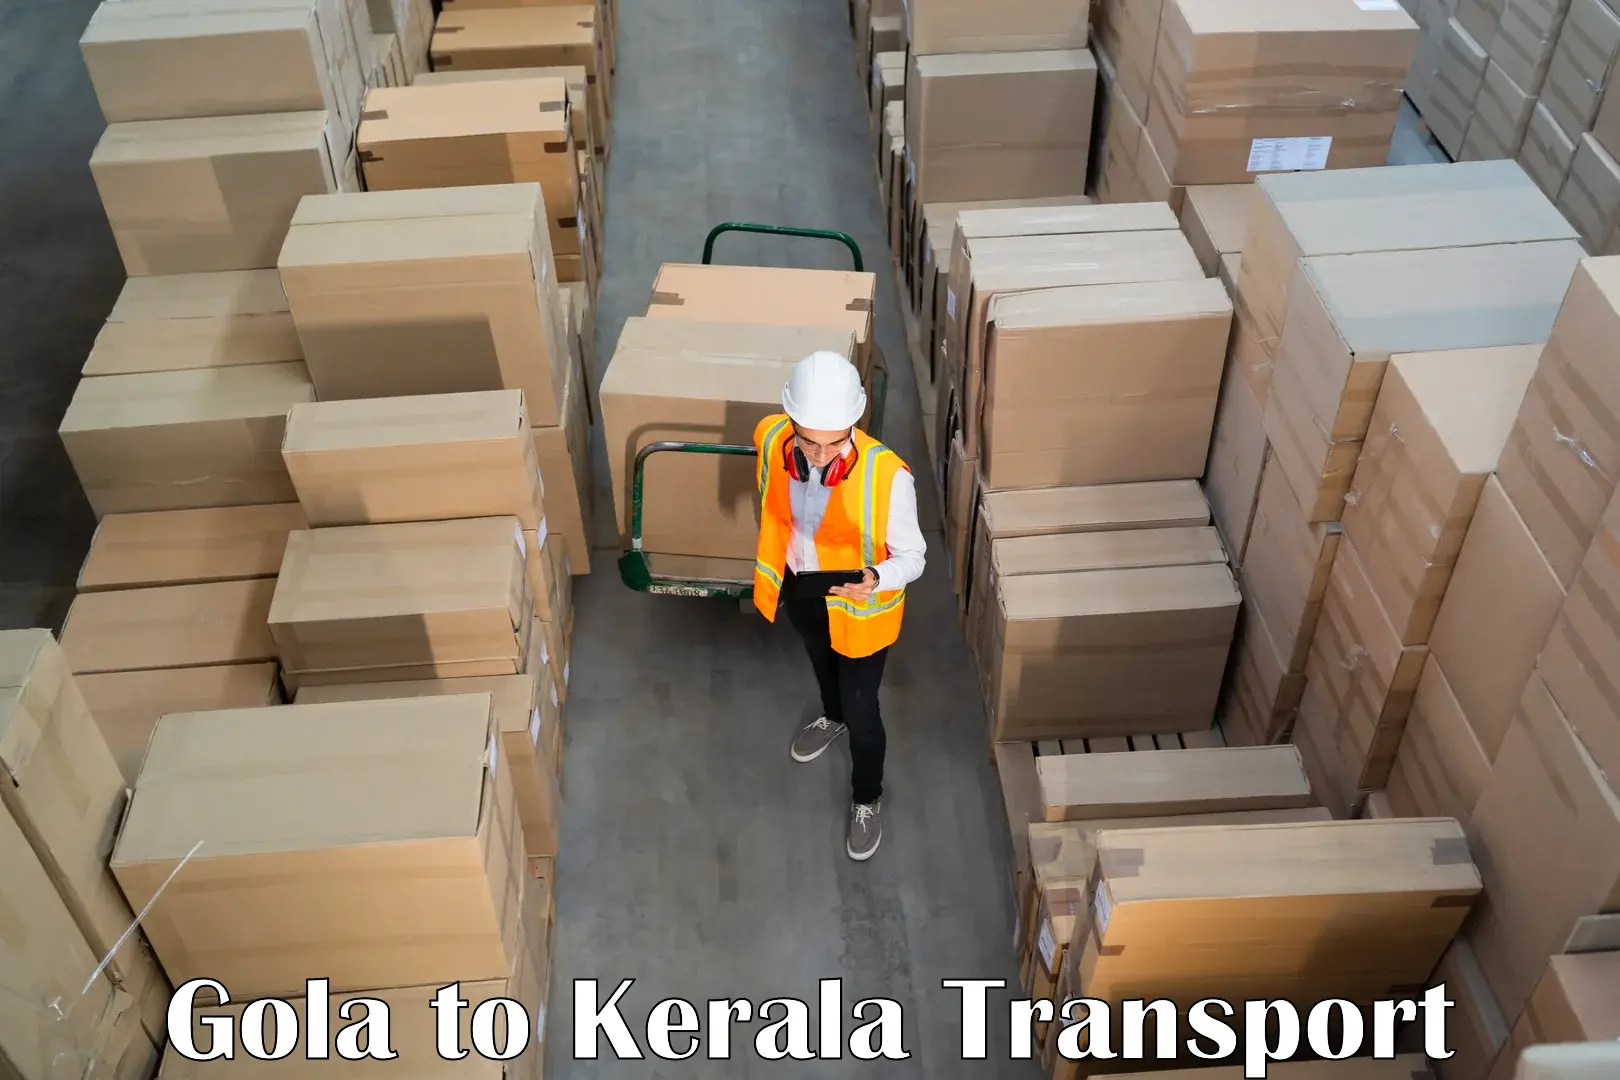 All India transport service Gola to Kattappana